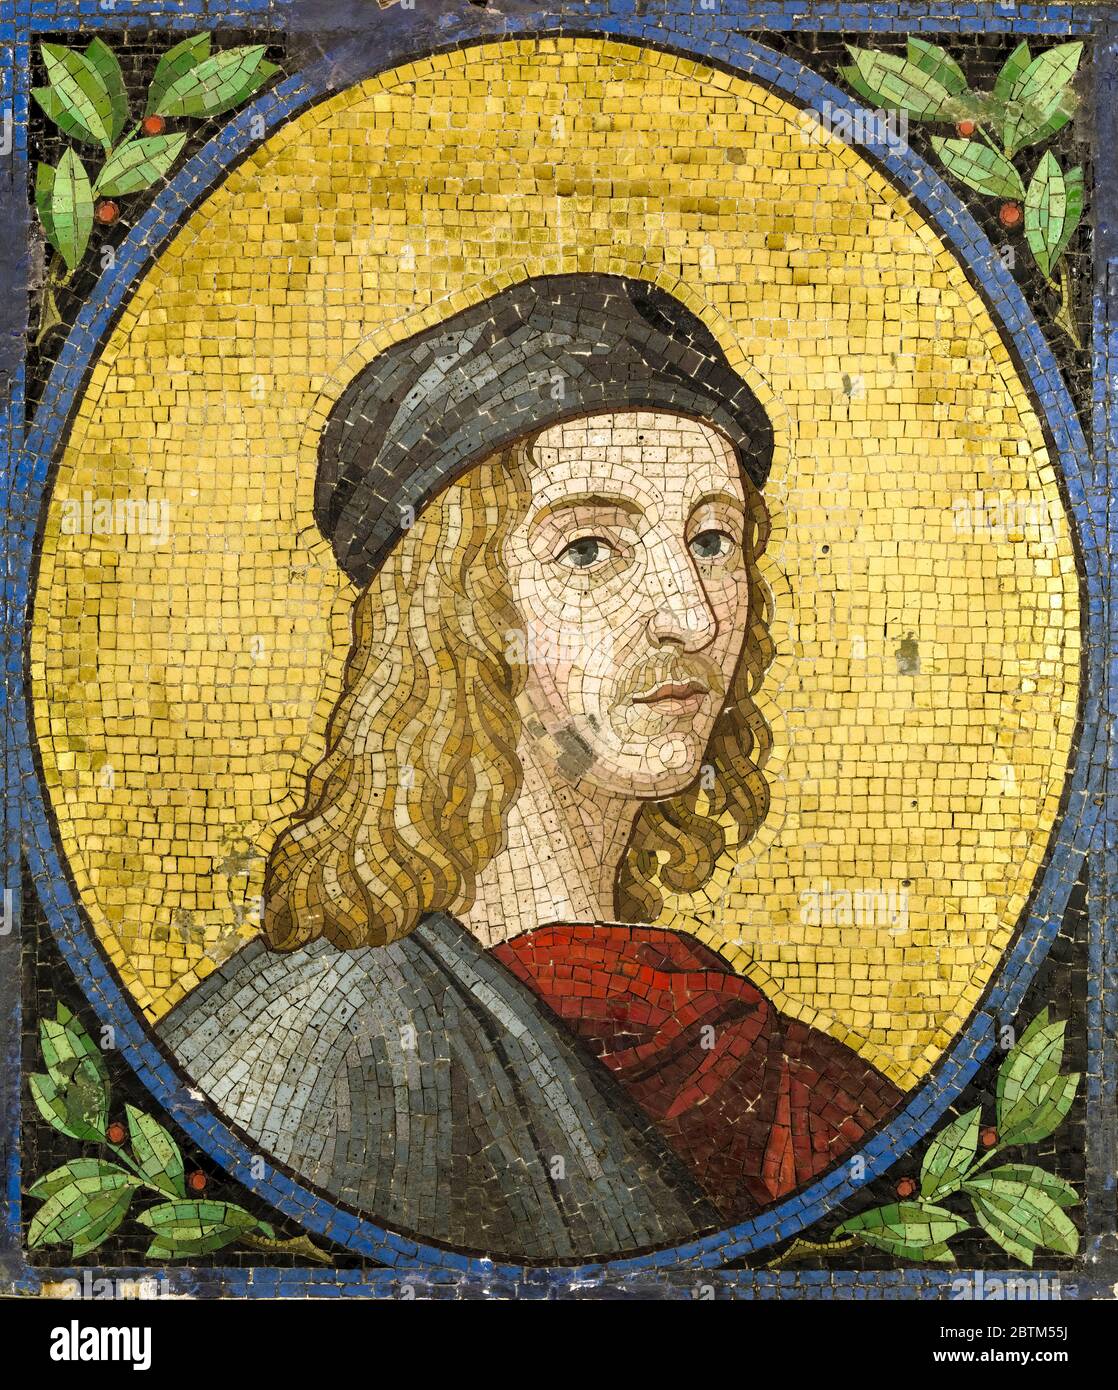 Raffaello Sanzio da Urbino, Raffaello (1483-1520), pittore e architetto italiano, mosaico ritratto, non datato, forse ottocentesco o ottocentesco Foto Stock